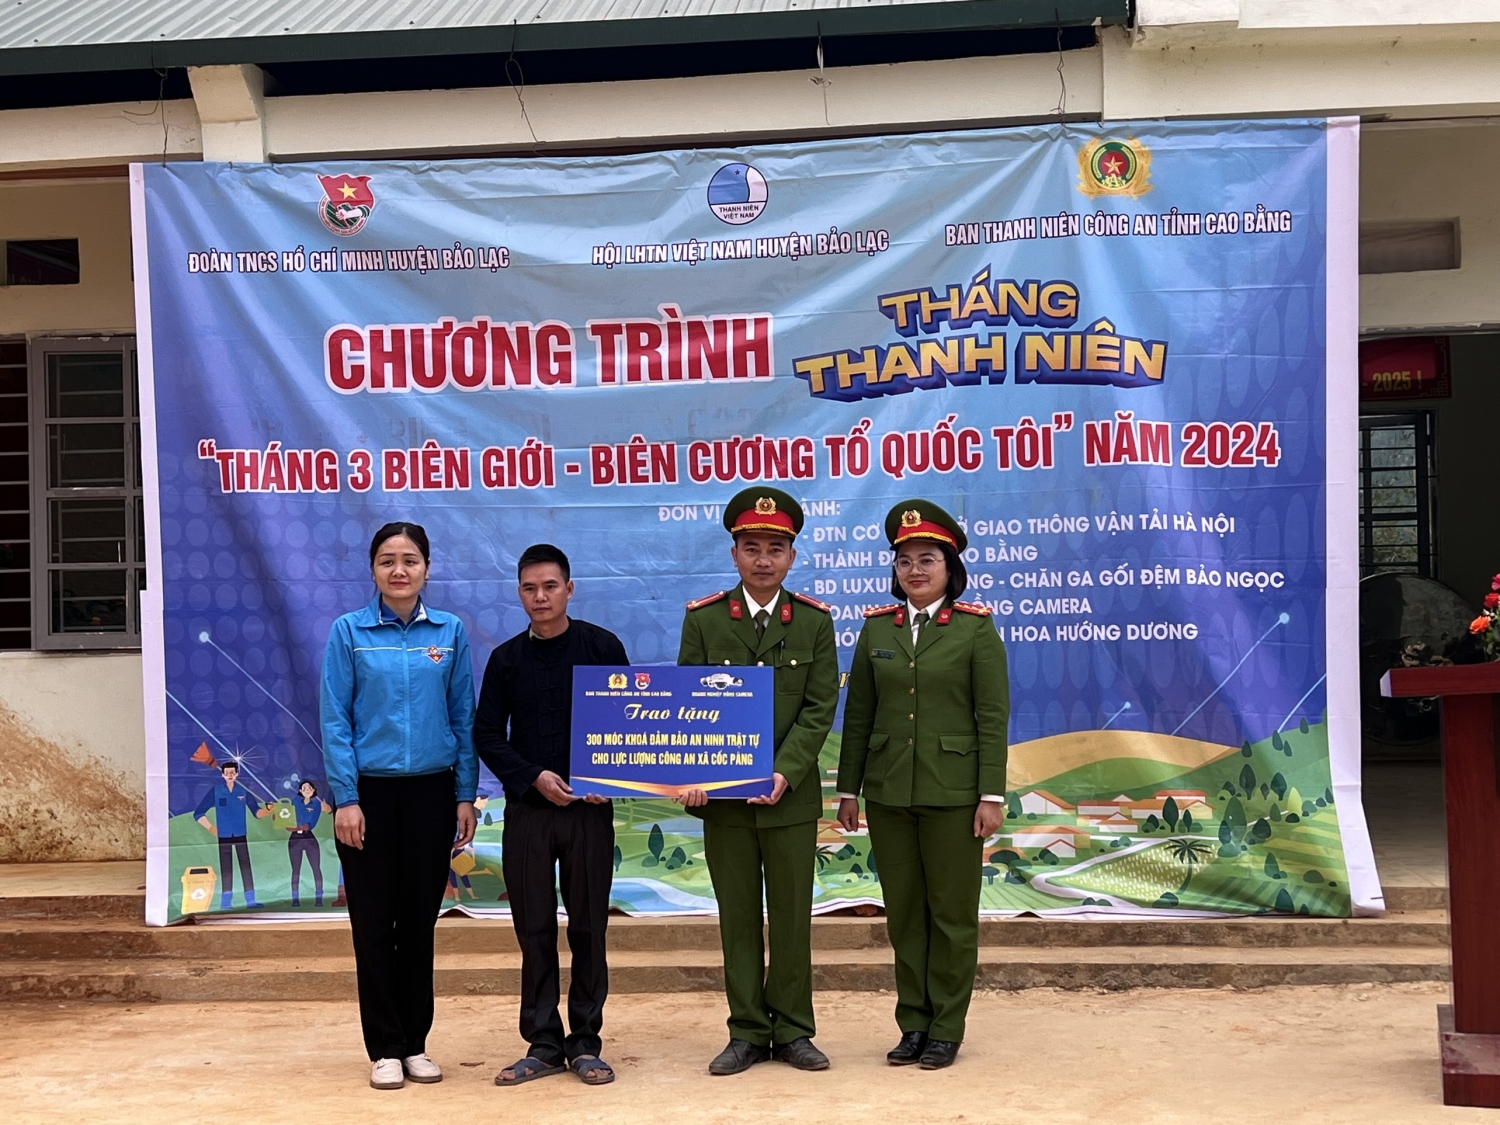 Huyện Đoàn và Ban thanh niên Công an tỉnh Cao Bằng trao biểu trưng tặng 300 móc khoá đảm bảo An ninh trật tự cho Công an xã Cốc Pàng và nhân dân xóm Nà Mìa